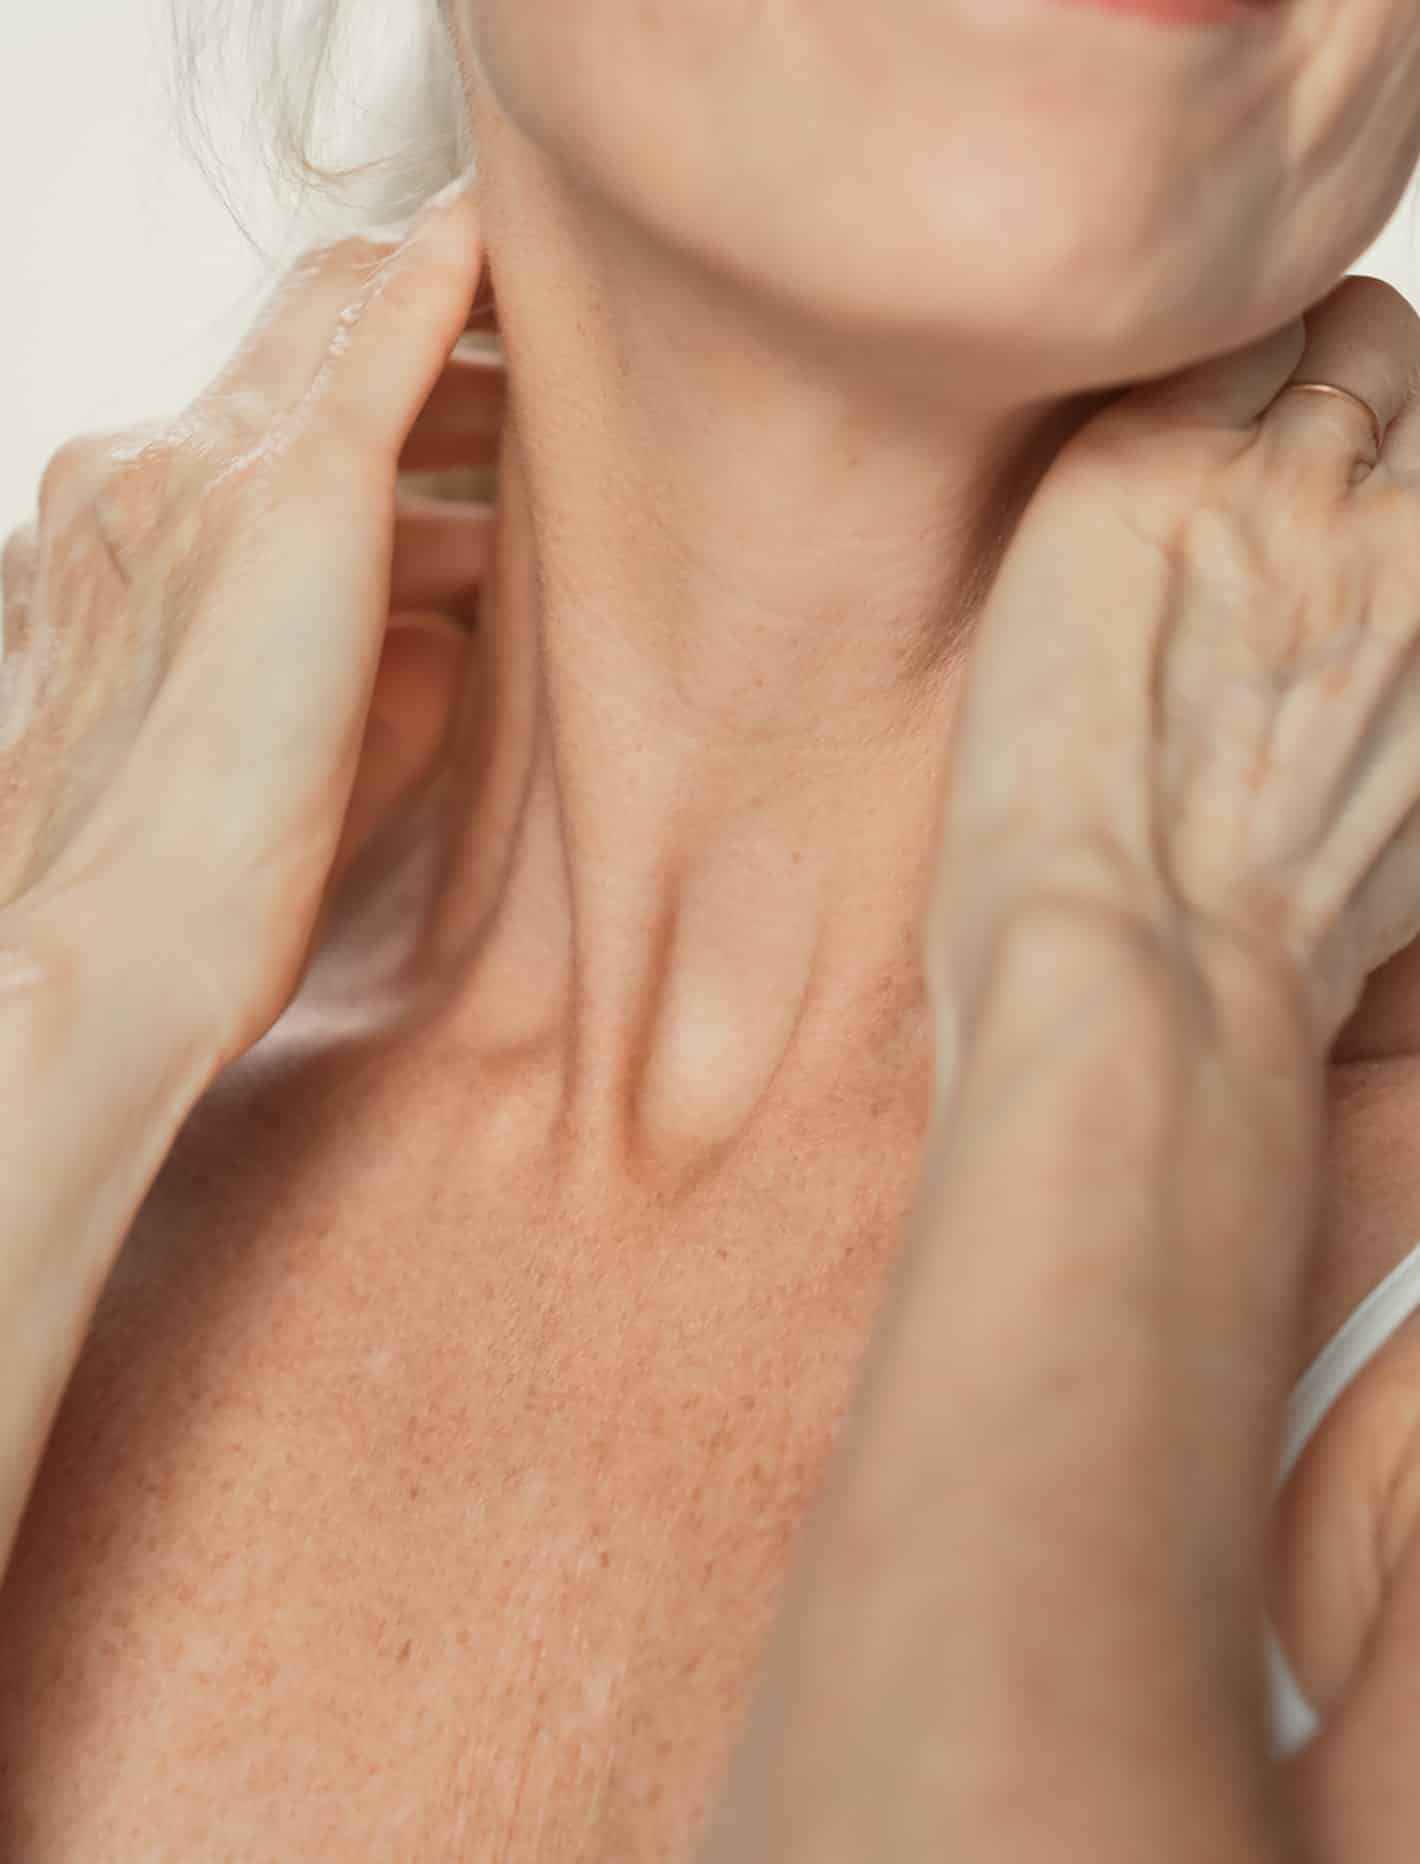 Relachement cutané de la peau au niveau du cou avant traitement Au centre esthetique Tremoille a paris au 8eme